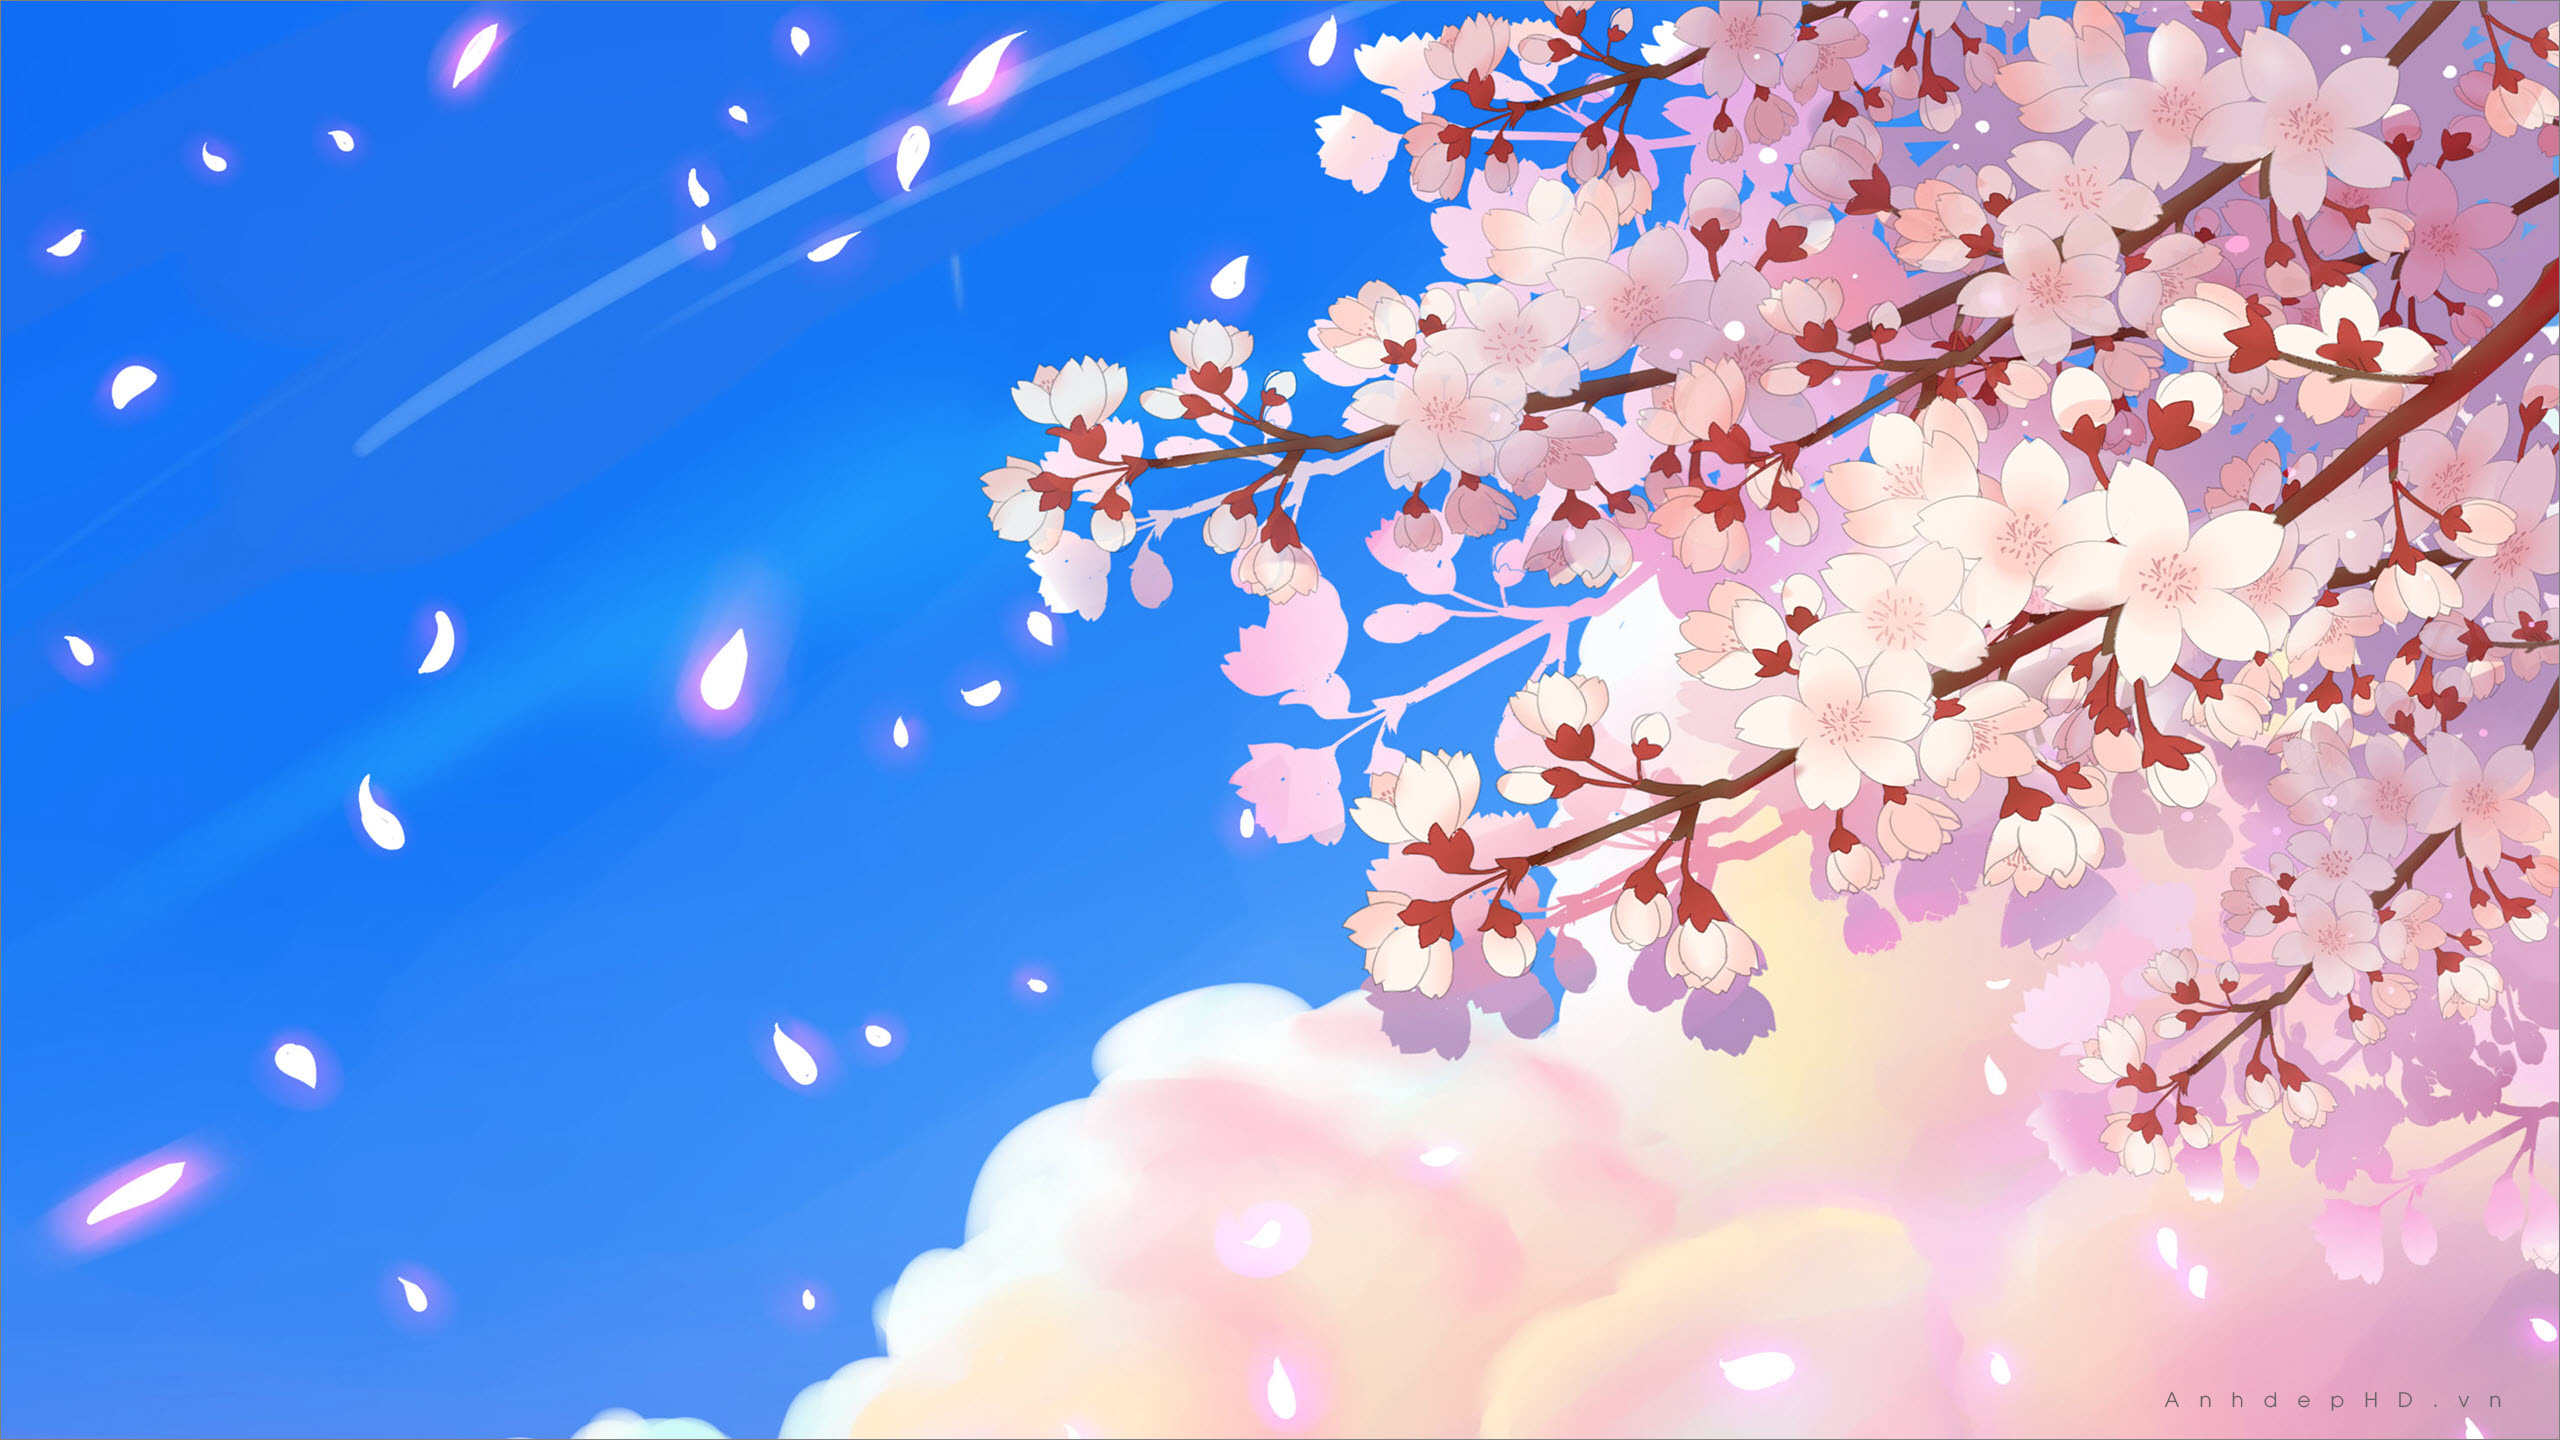 Mê mẩn với cảnh hoa anh đào anime nổi tiếng trên màn ảnh, bạn không thể bỏ qua hình ảnh này! Cùng ngắm nhìn những bông anh đào nở rộ trong ánh nắng chiều tà, tạo nên một không gian tuyệt vời giữa thiên nhiên và con người.